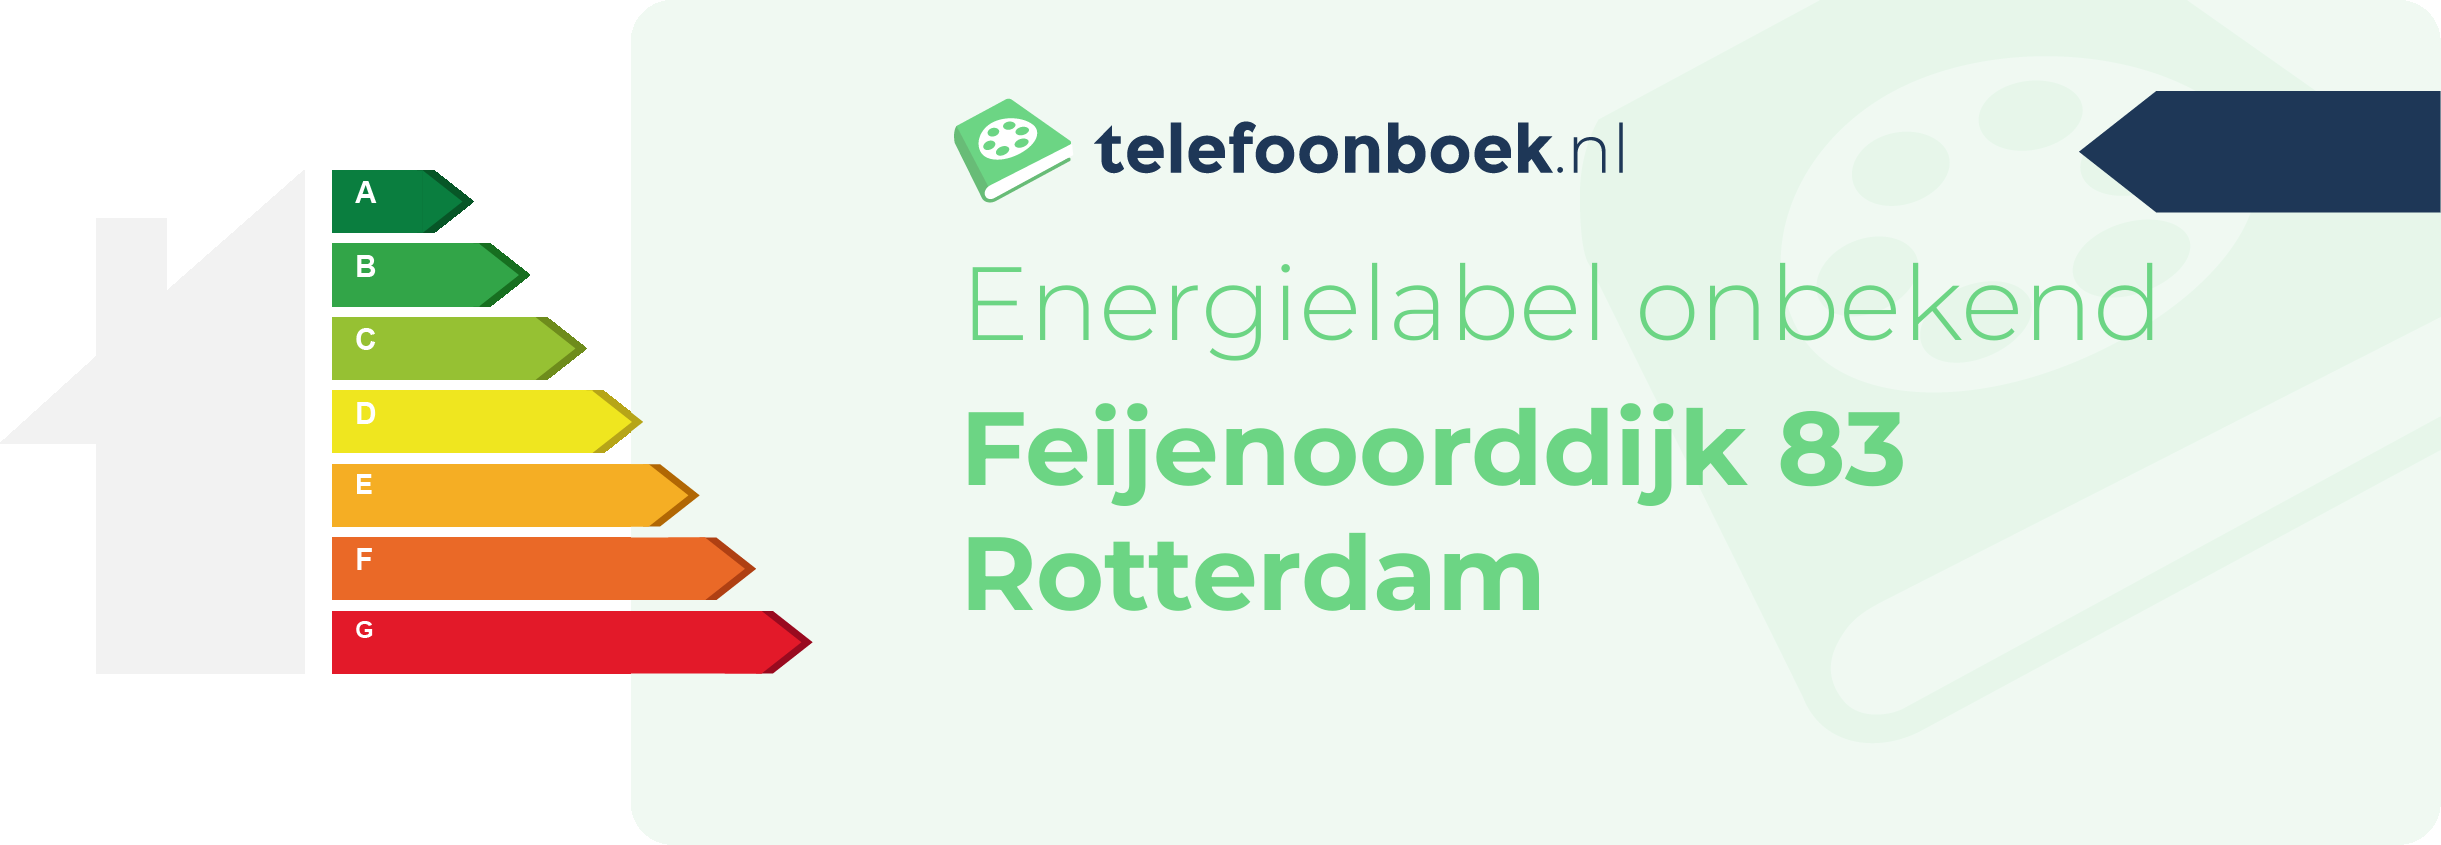 Energielabel Feijenoorddijk 83 Rotterdam